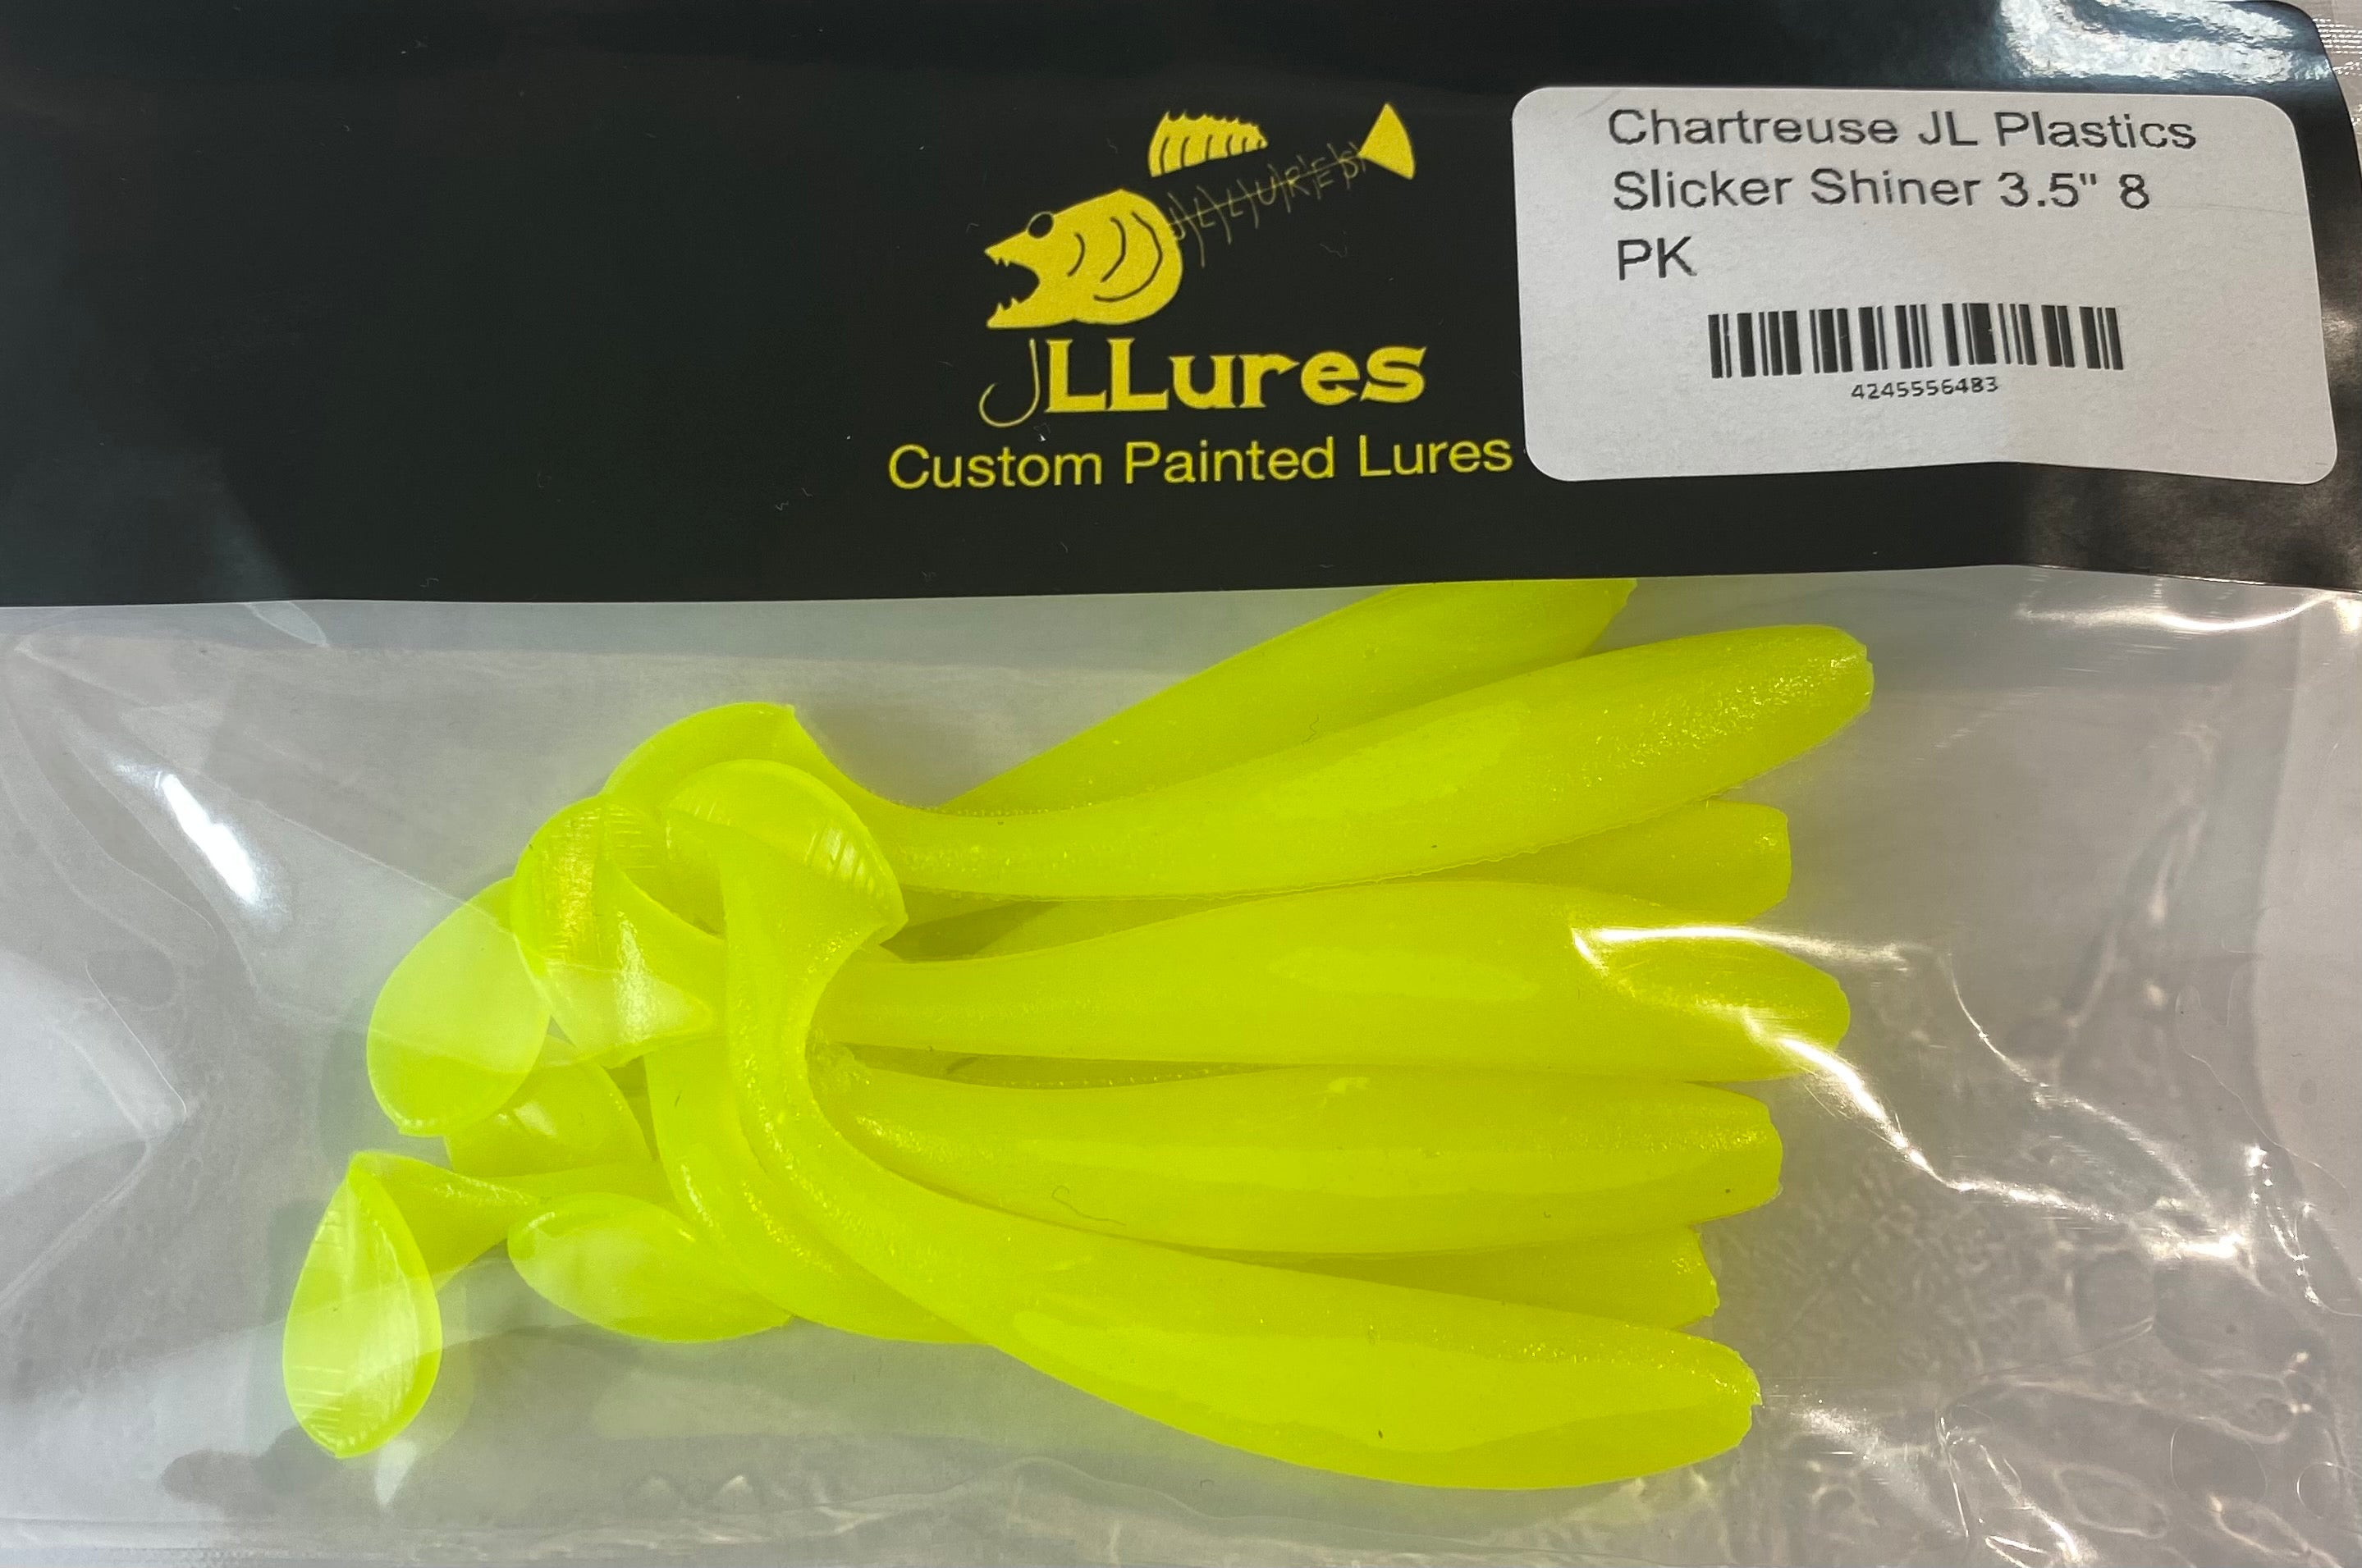 Chartreuse JL Plastics